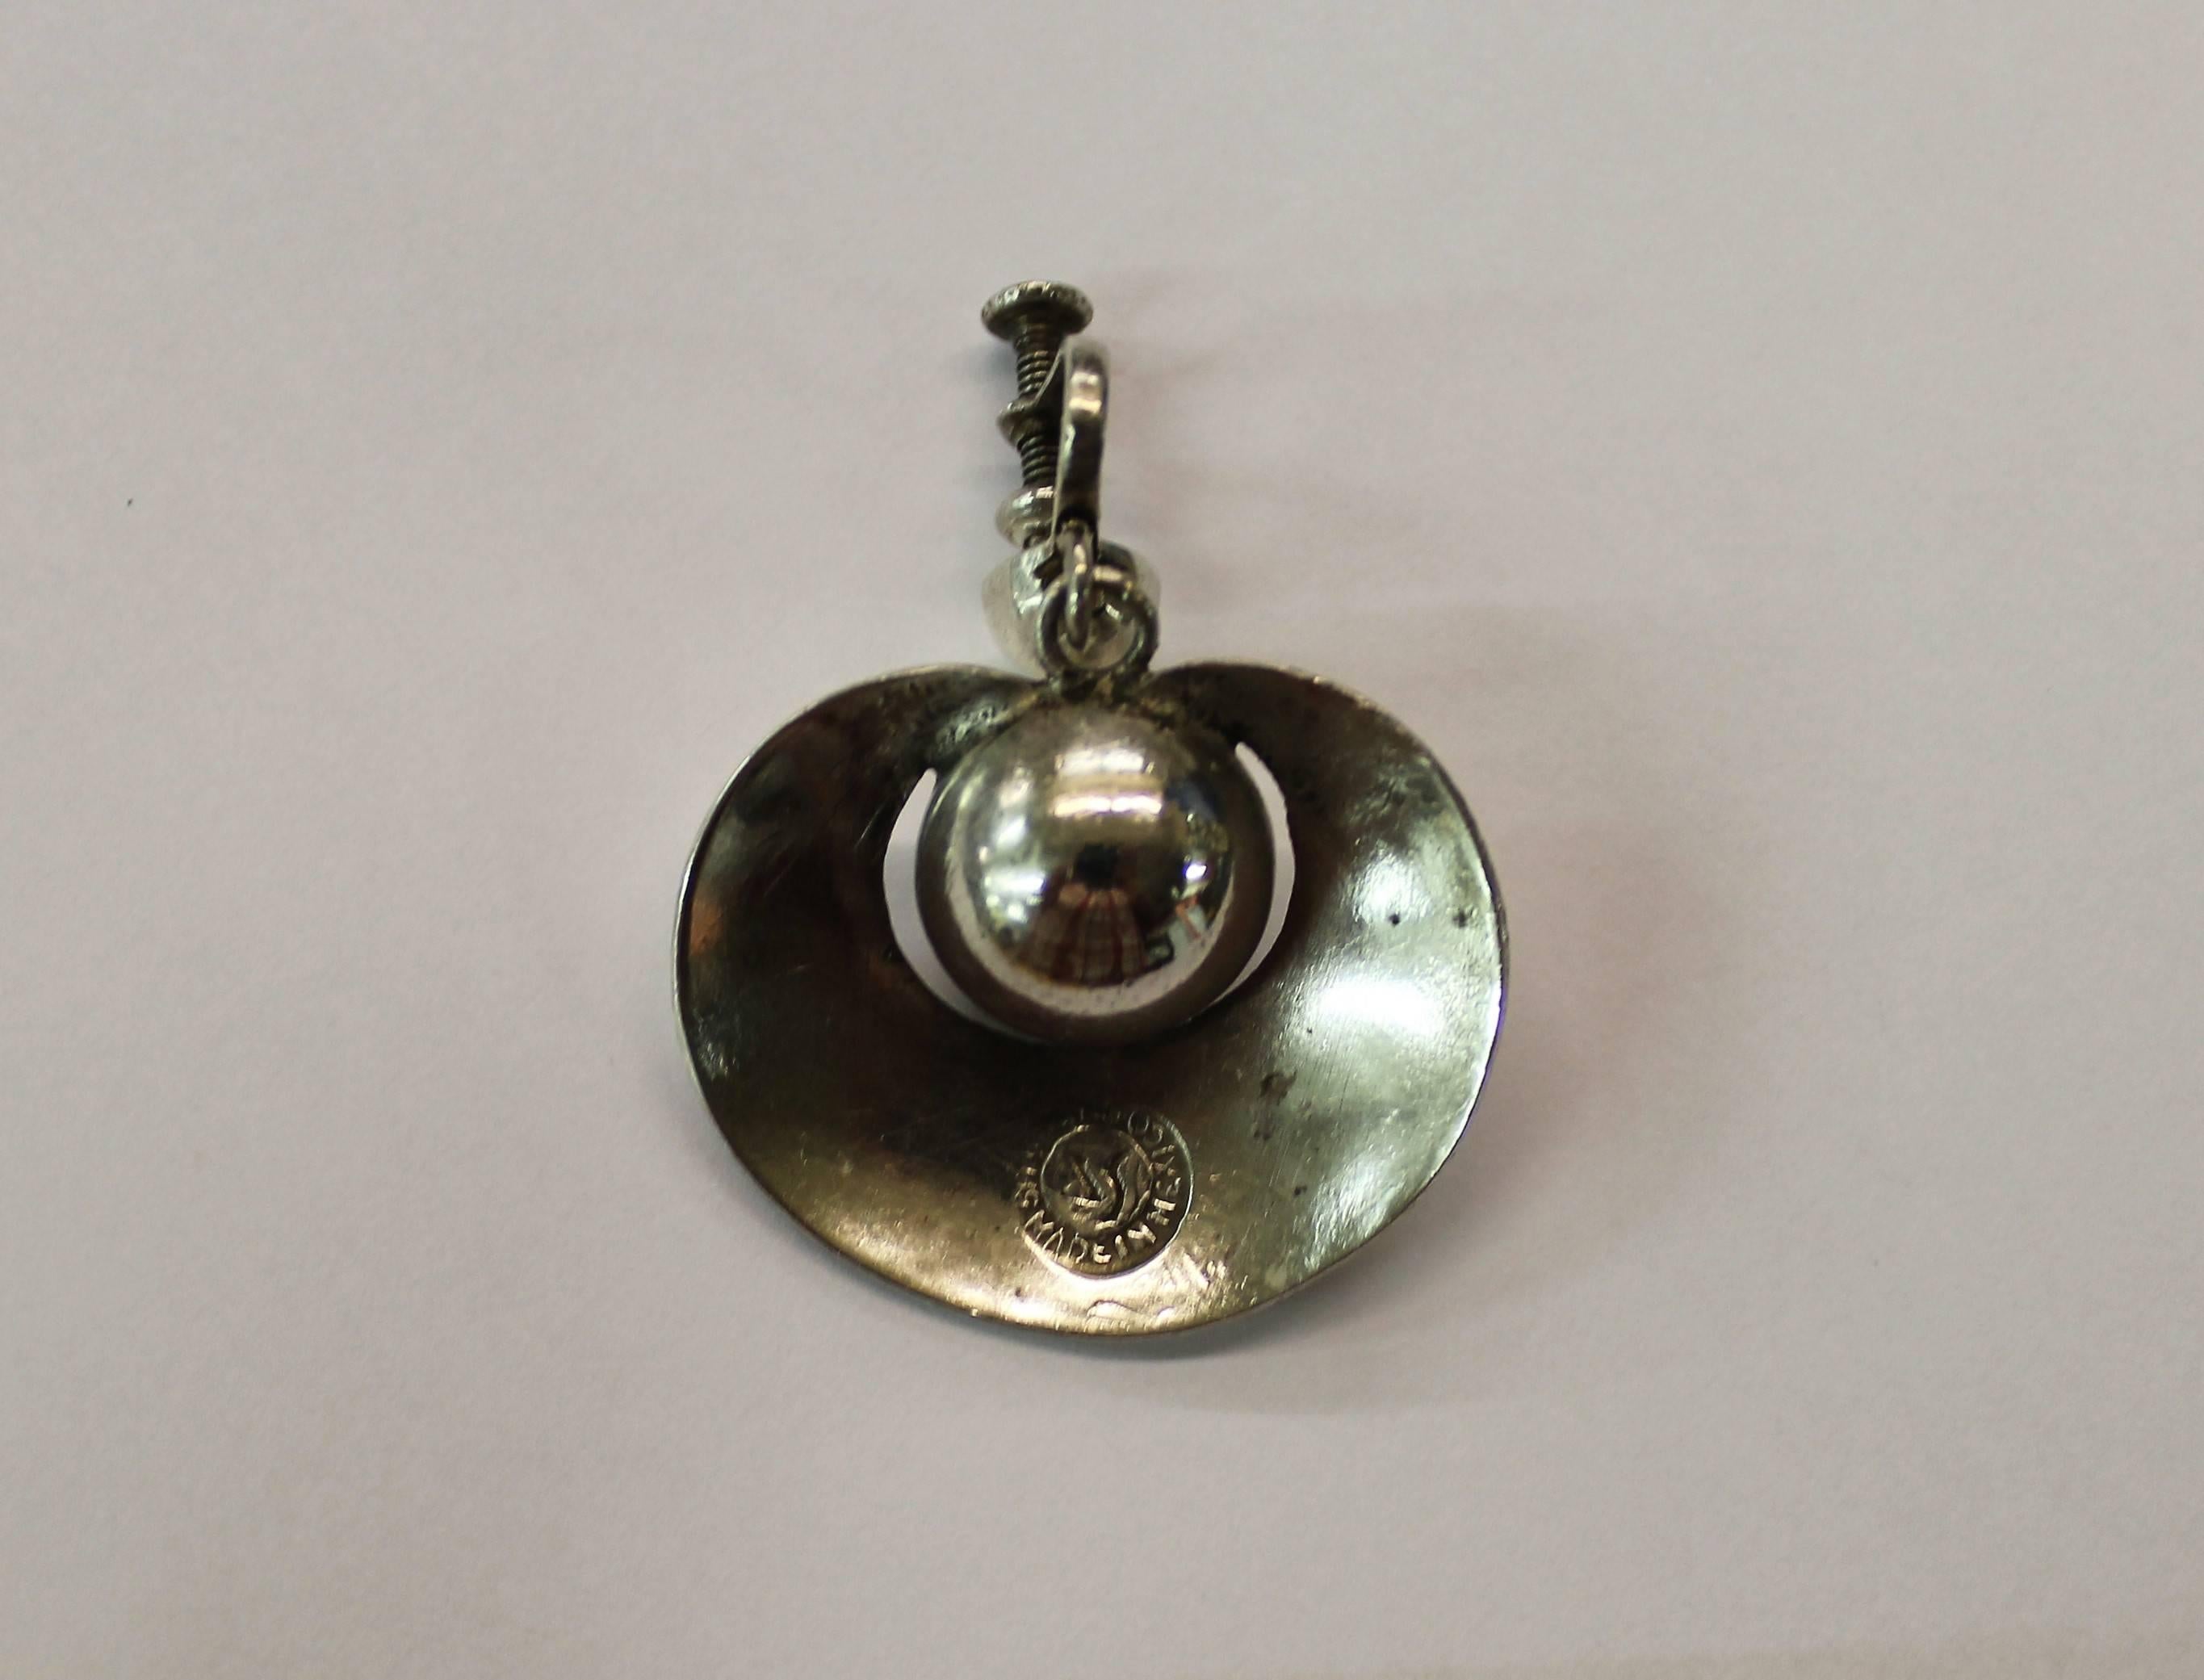 Pair of sterling silver earrings by William Spratling.